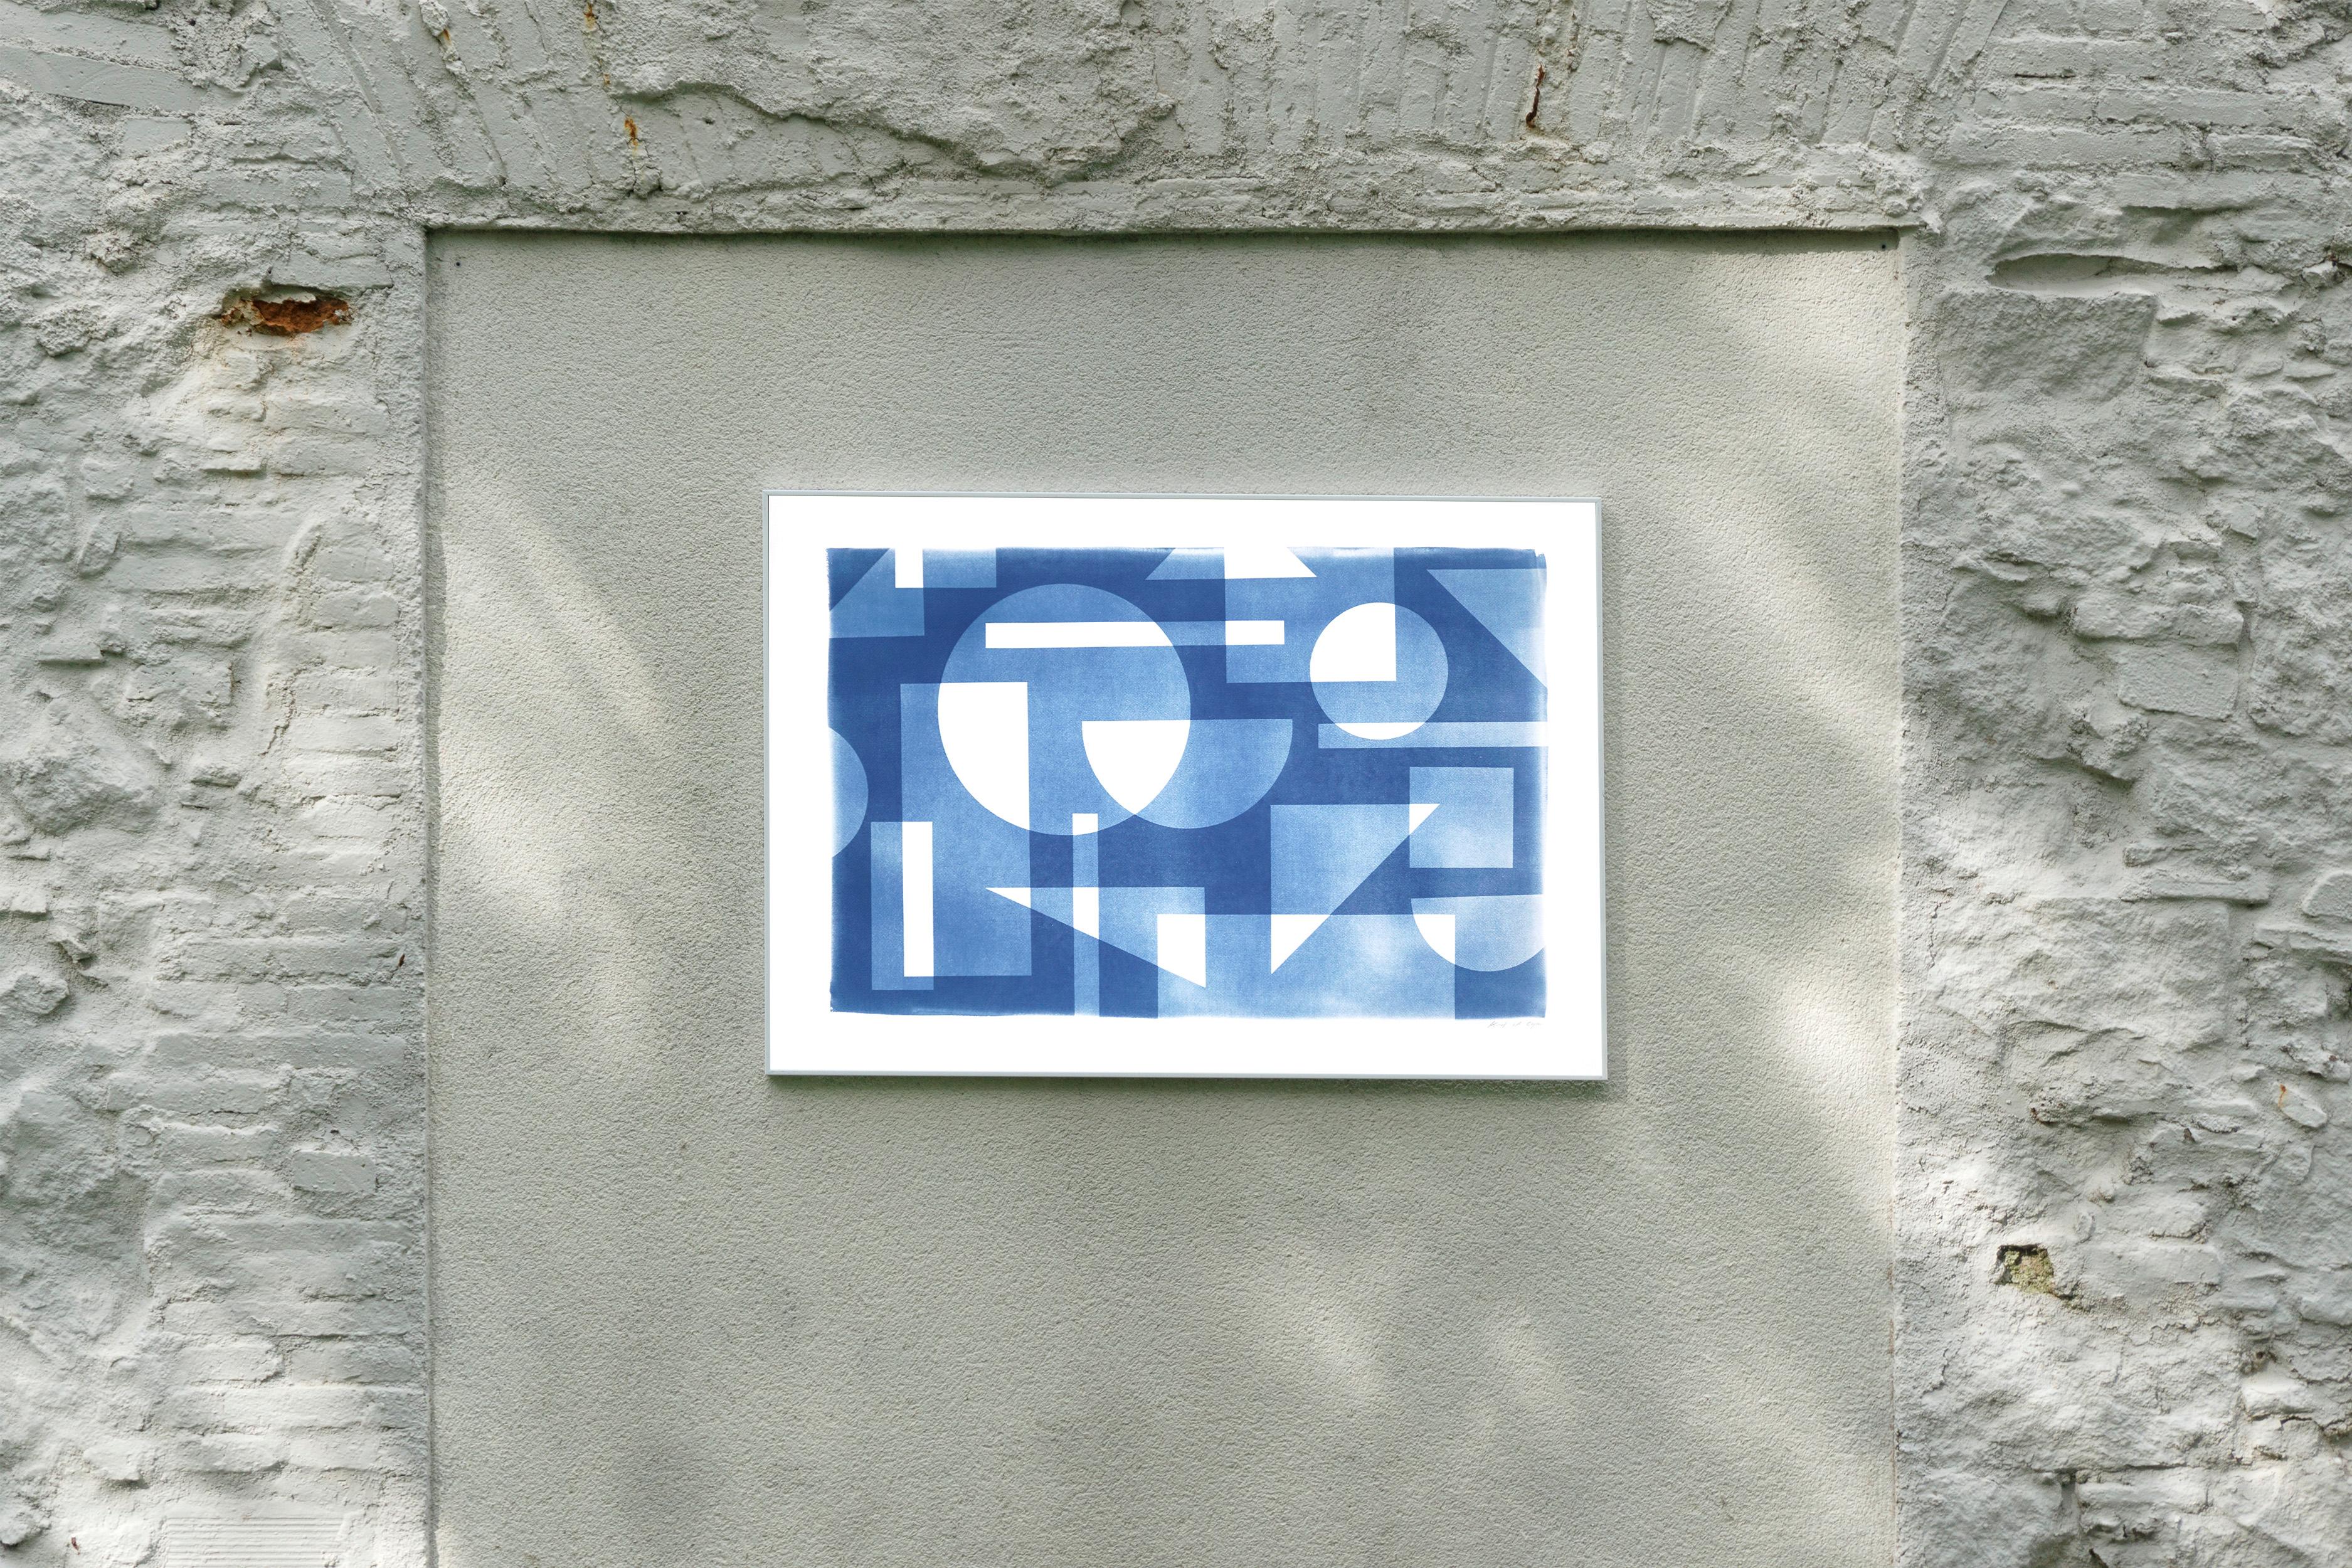 Cyanotype de style Bauhaus de style Art Déco à motif des années trente, géométrie bleue faite à la main  - Photograph de Kind of Cyan